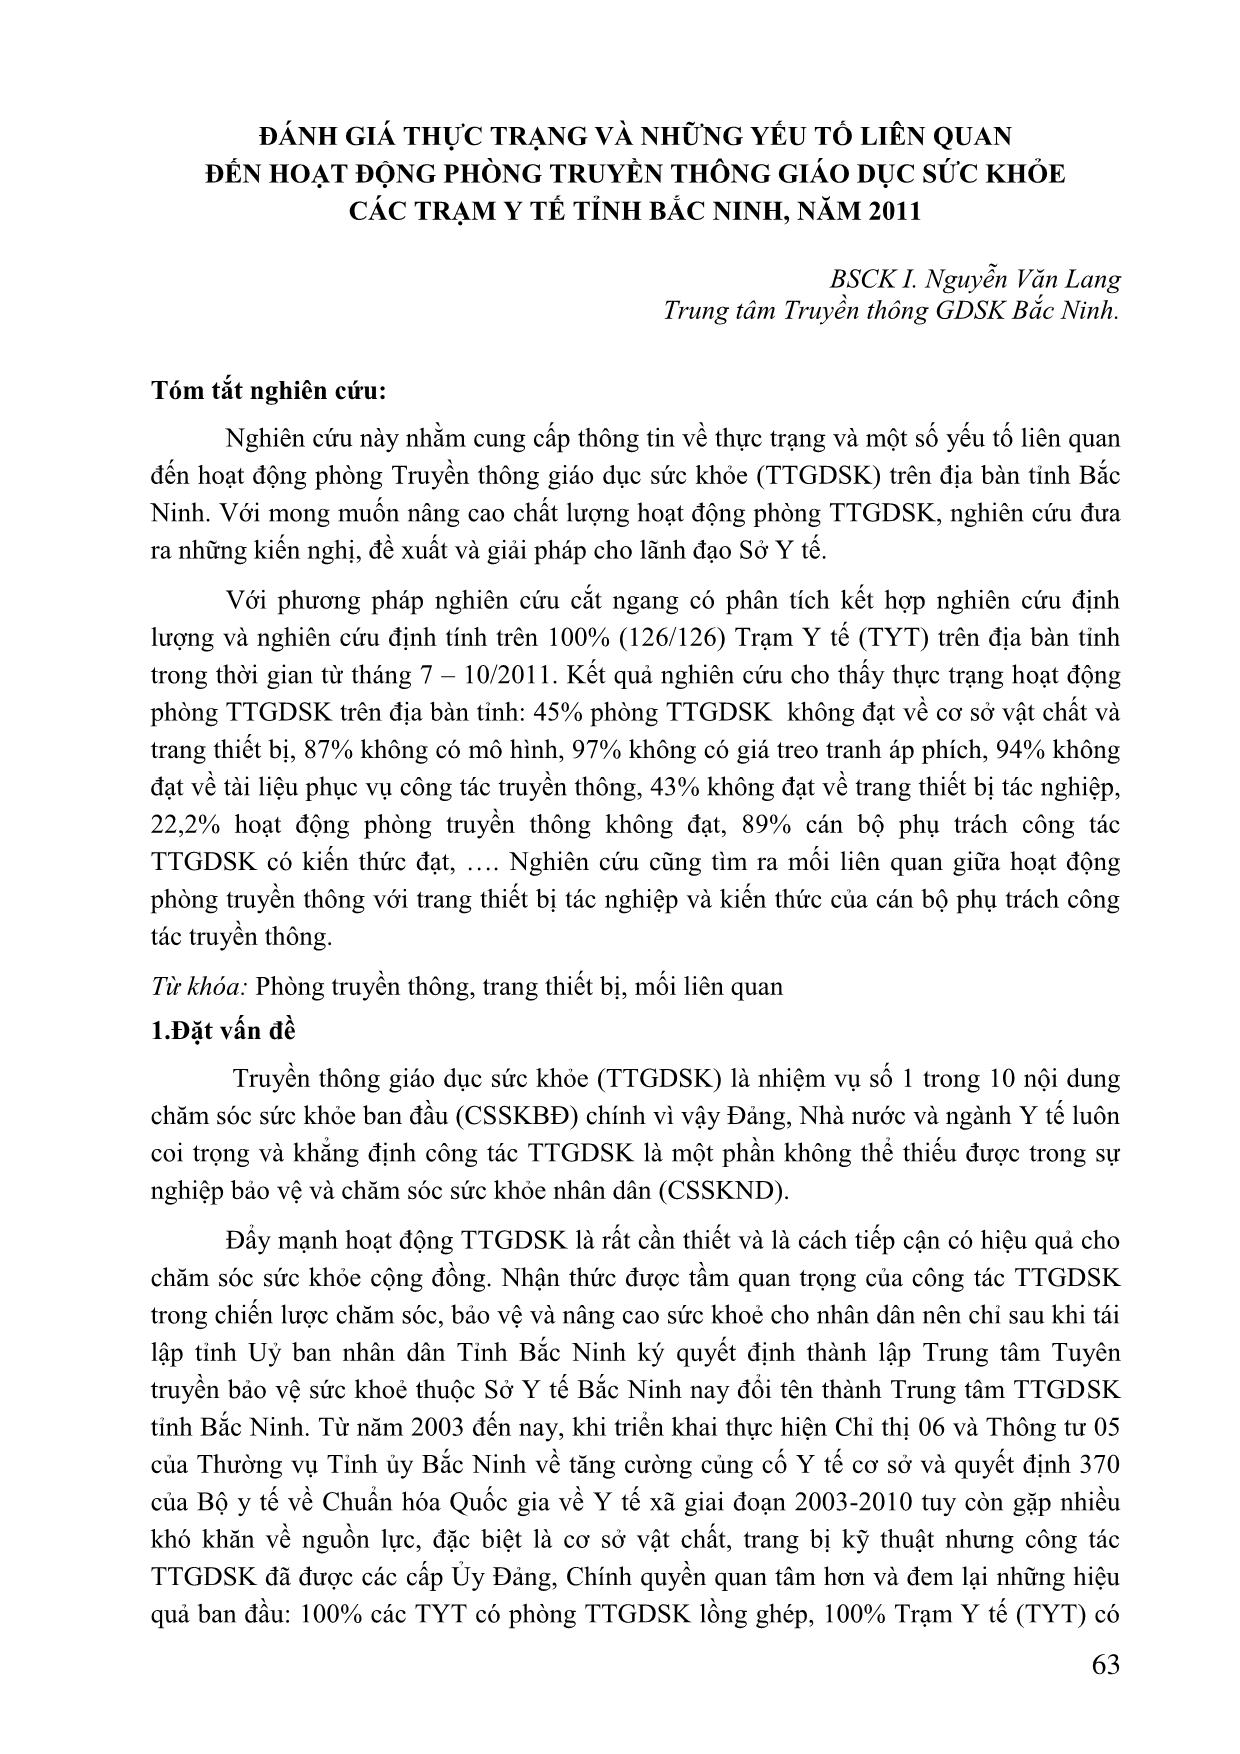 Đánh giá thực trạng và những yếu tố liên quan đến hoạt động phòng truyền thông giáo dục sức khỏe các trạm y tế tỉnh Bắc Ninh, năm 2011 trang 1